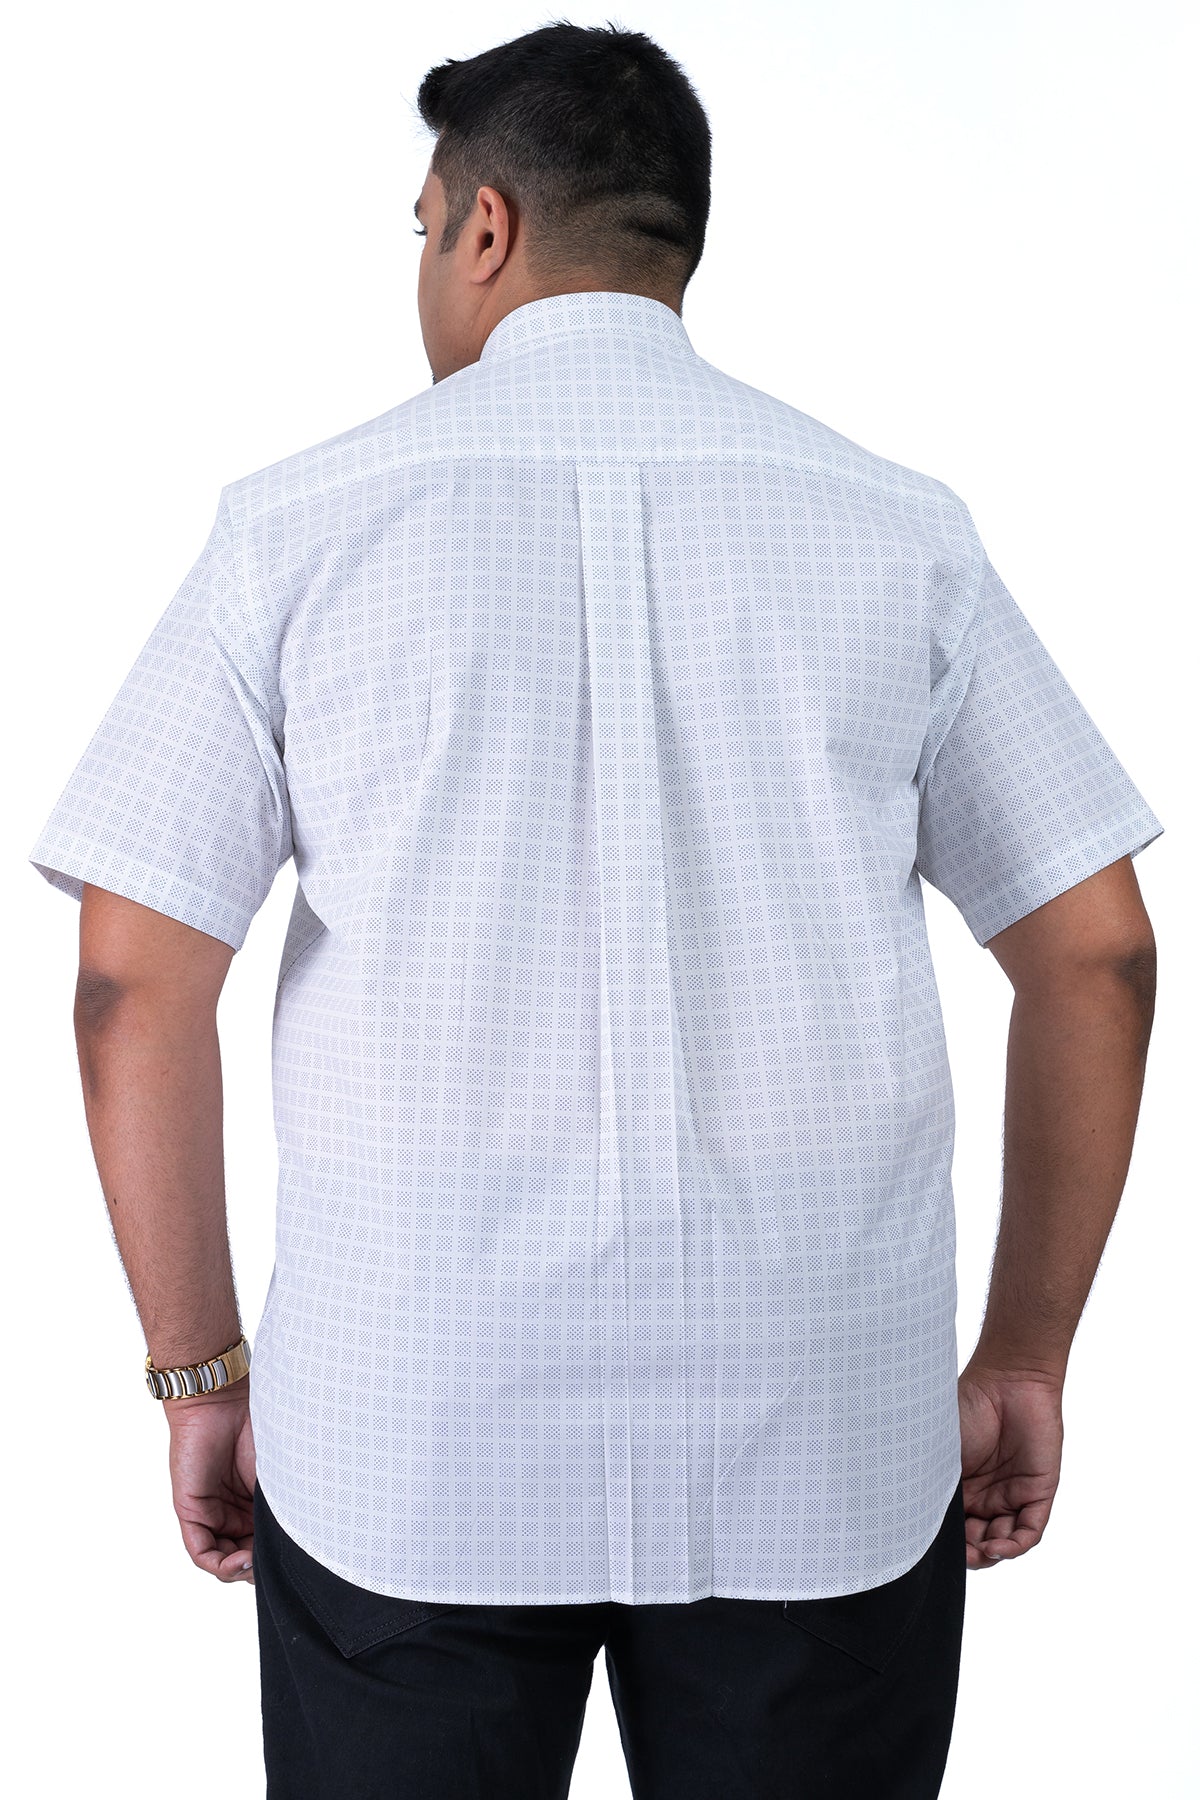 Men's White Navy Plus Size Shirt